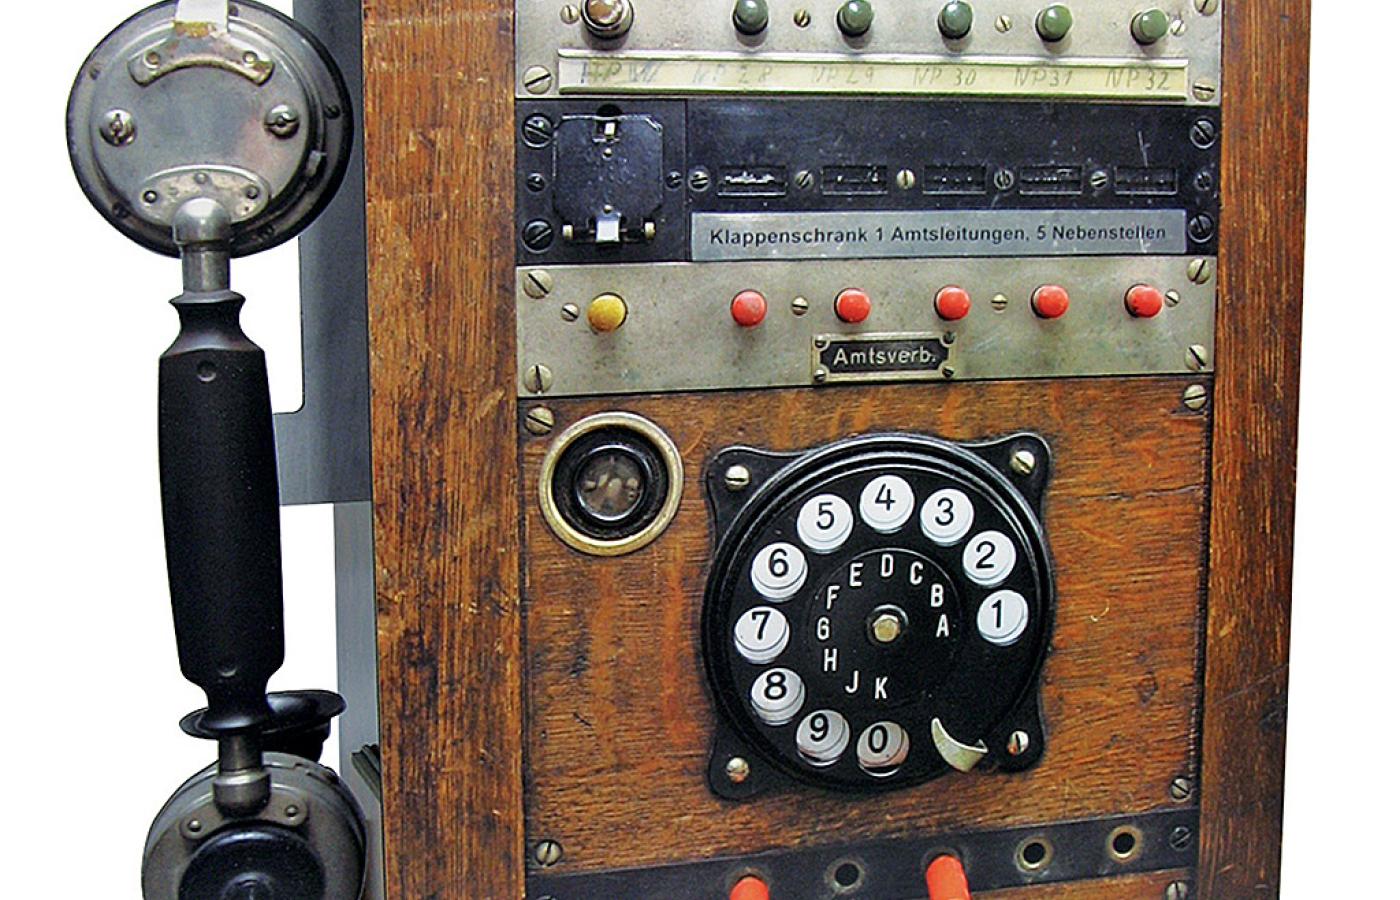 Stacja telefoniczna.  Wygląda jak stary drewniany telefon, ale nie da się z niego zadzwonić. Za to sprytnie ukrywa kable i zasilanie telefonu komórkowego, odtwarzacza MP3 lub aparatu cyfrowego. 41 x 28 x 15 cm. www. klemart. pl/sklep Cena: 179 zł.